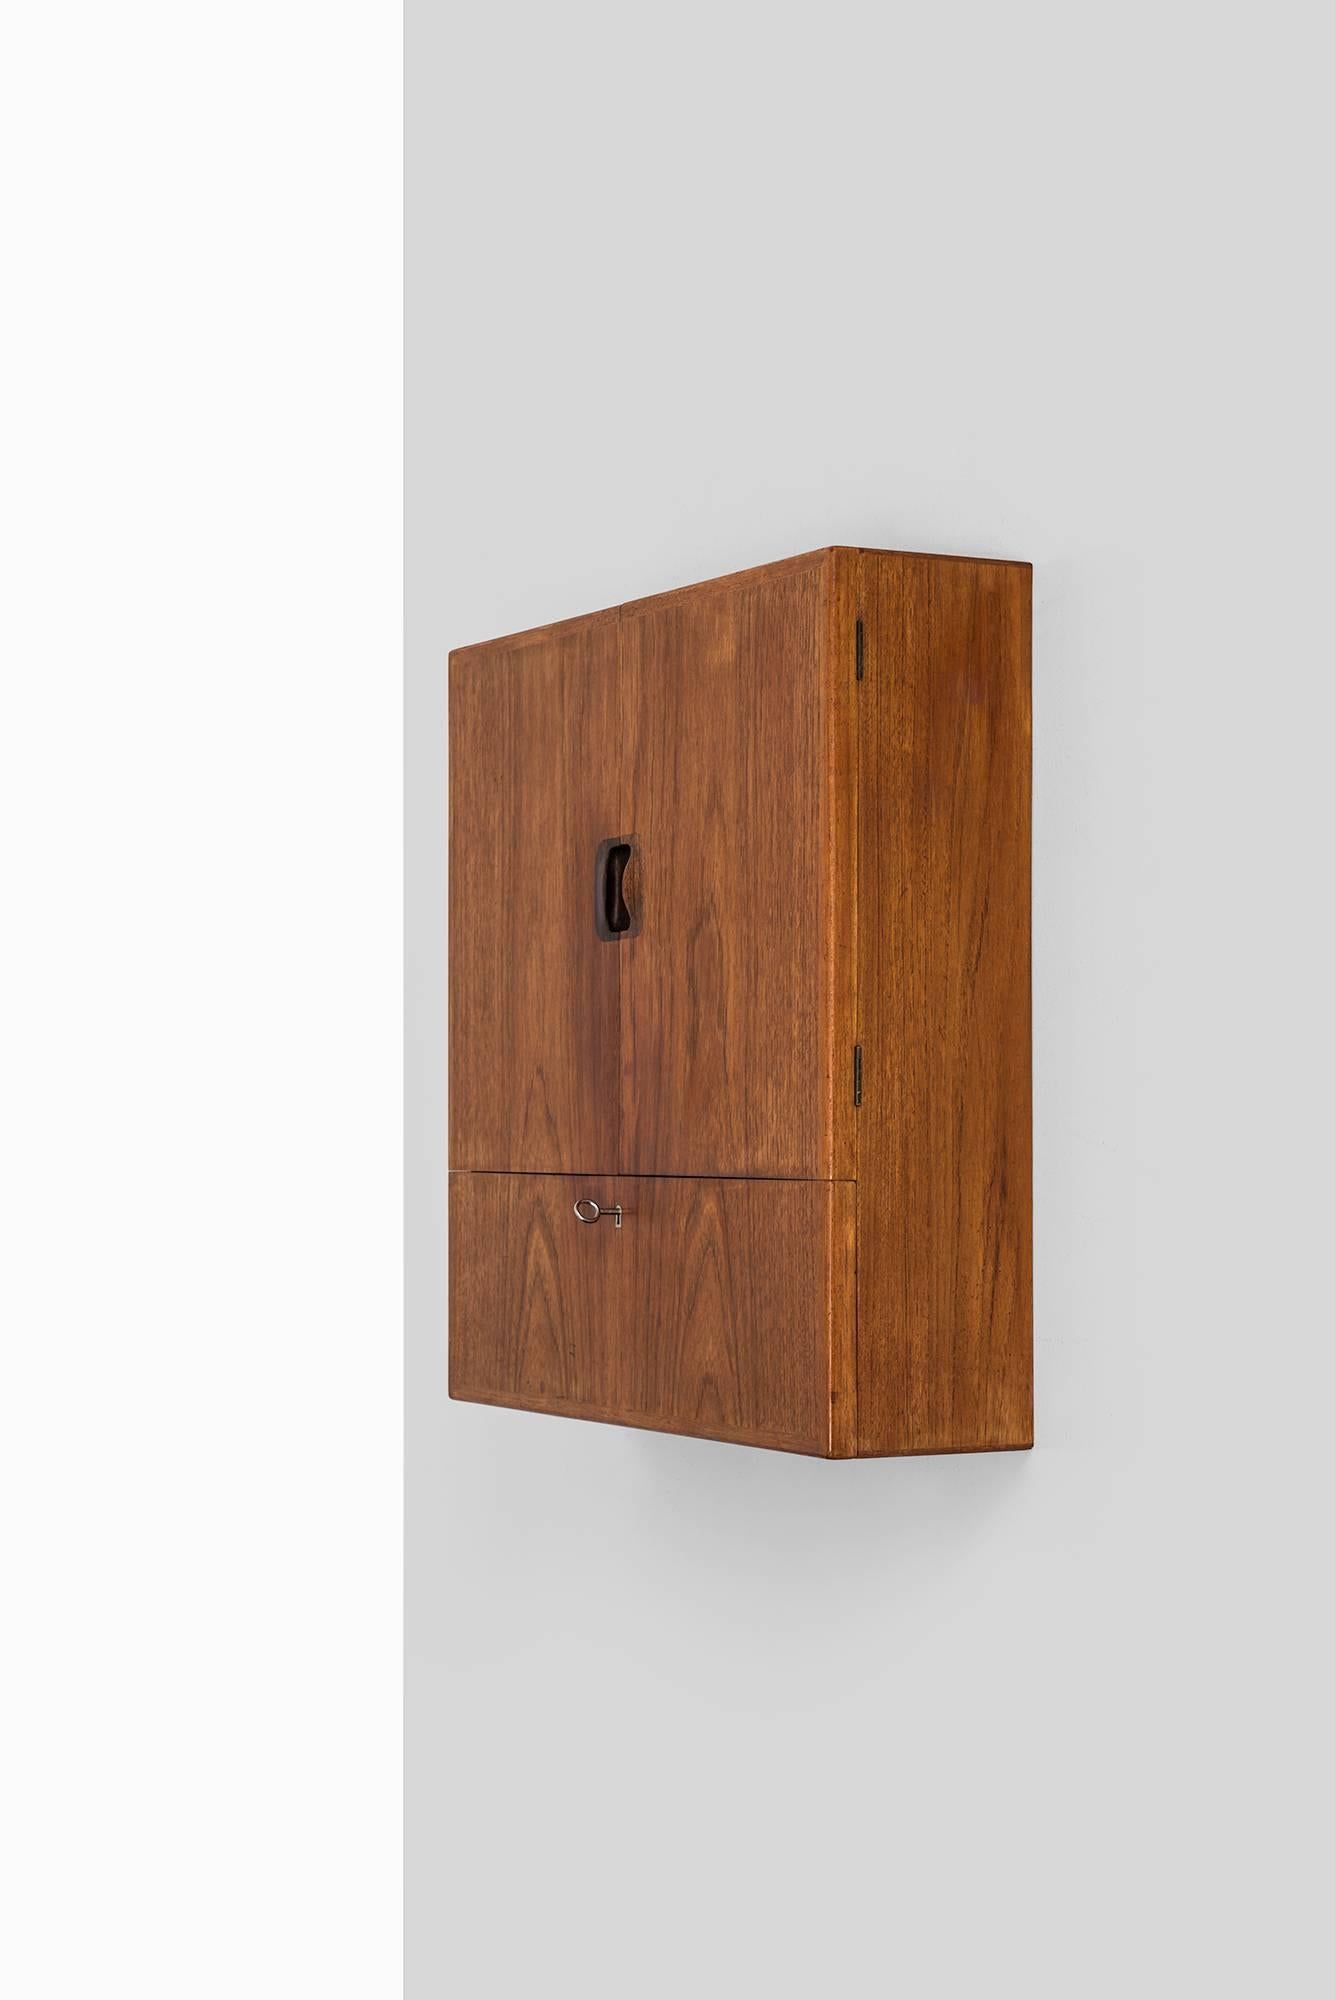 Very rare small wall hanged cabinet ‘Ung dame søkes’ designed by Tove & Edvard Kindt-Larsen. Produced by Gustav Bertelsen in Denmark.